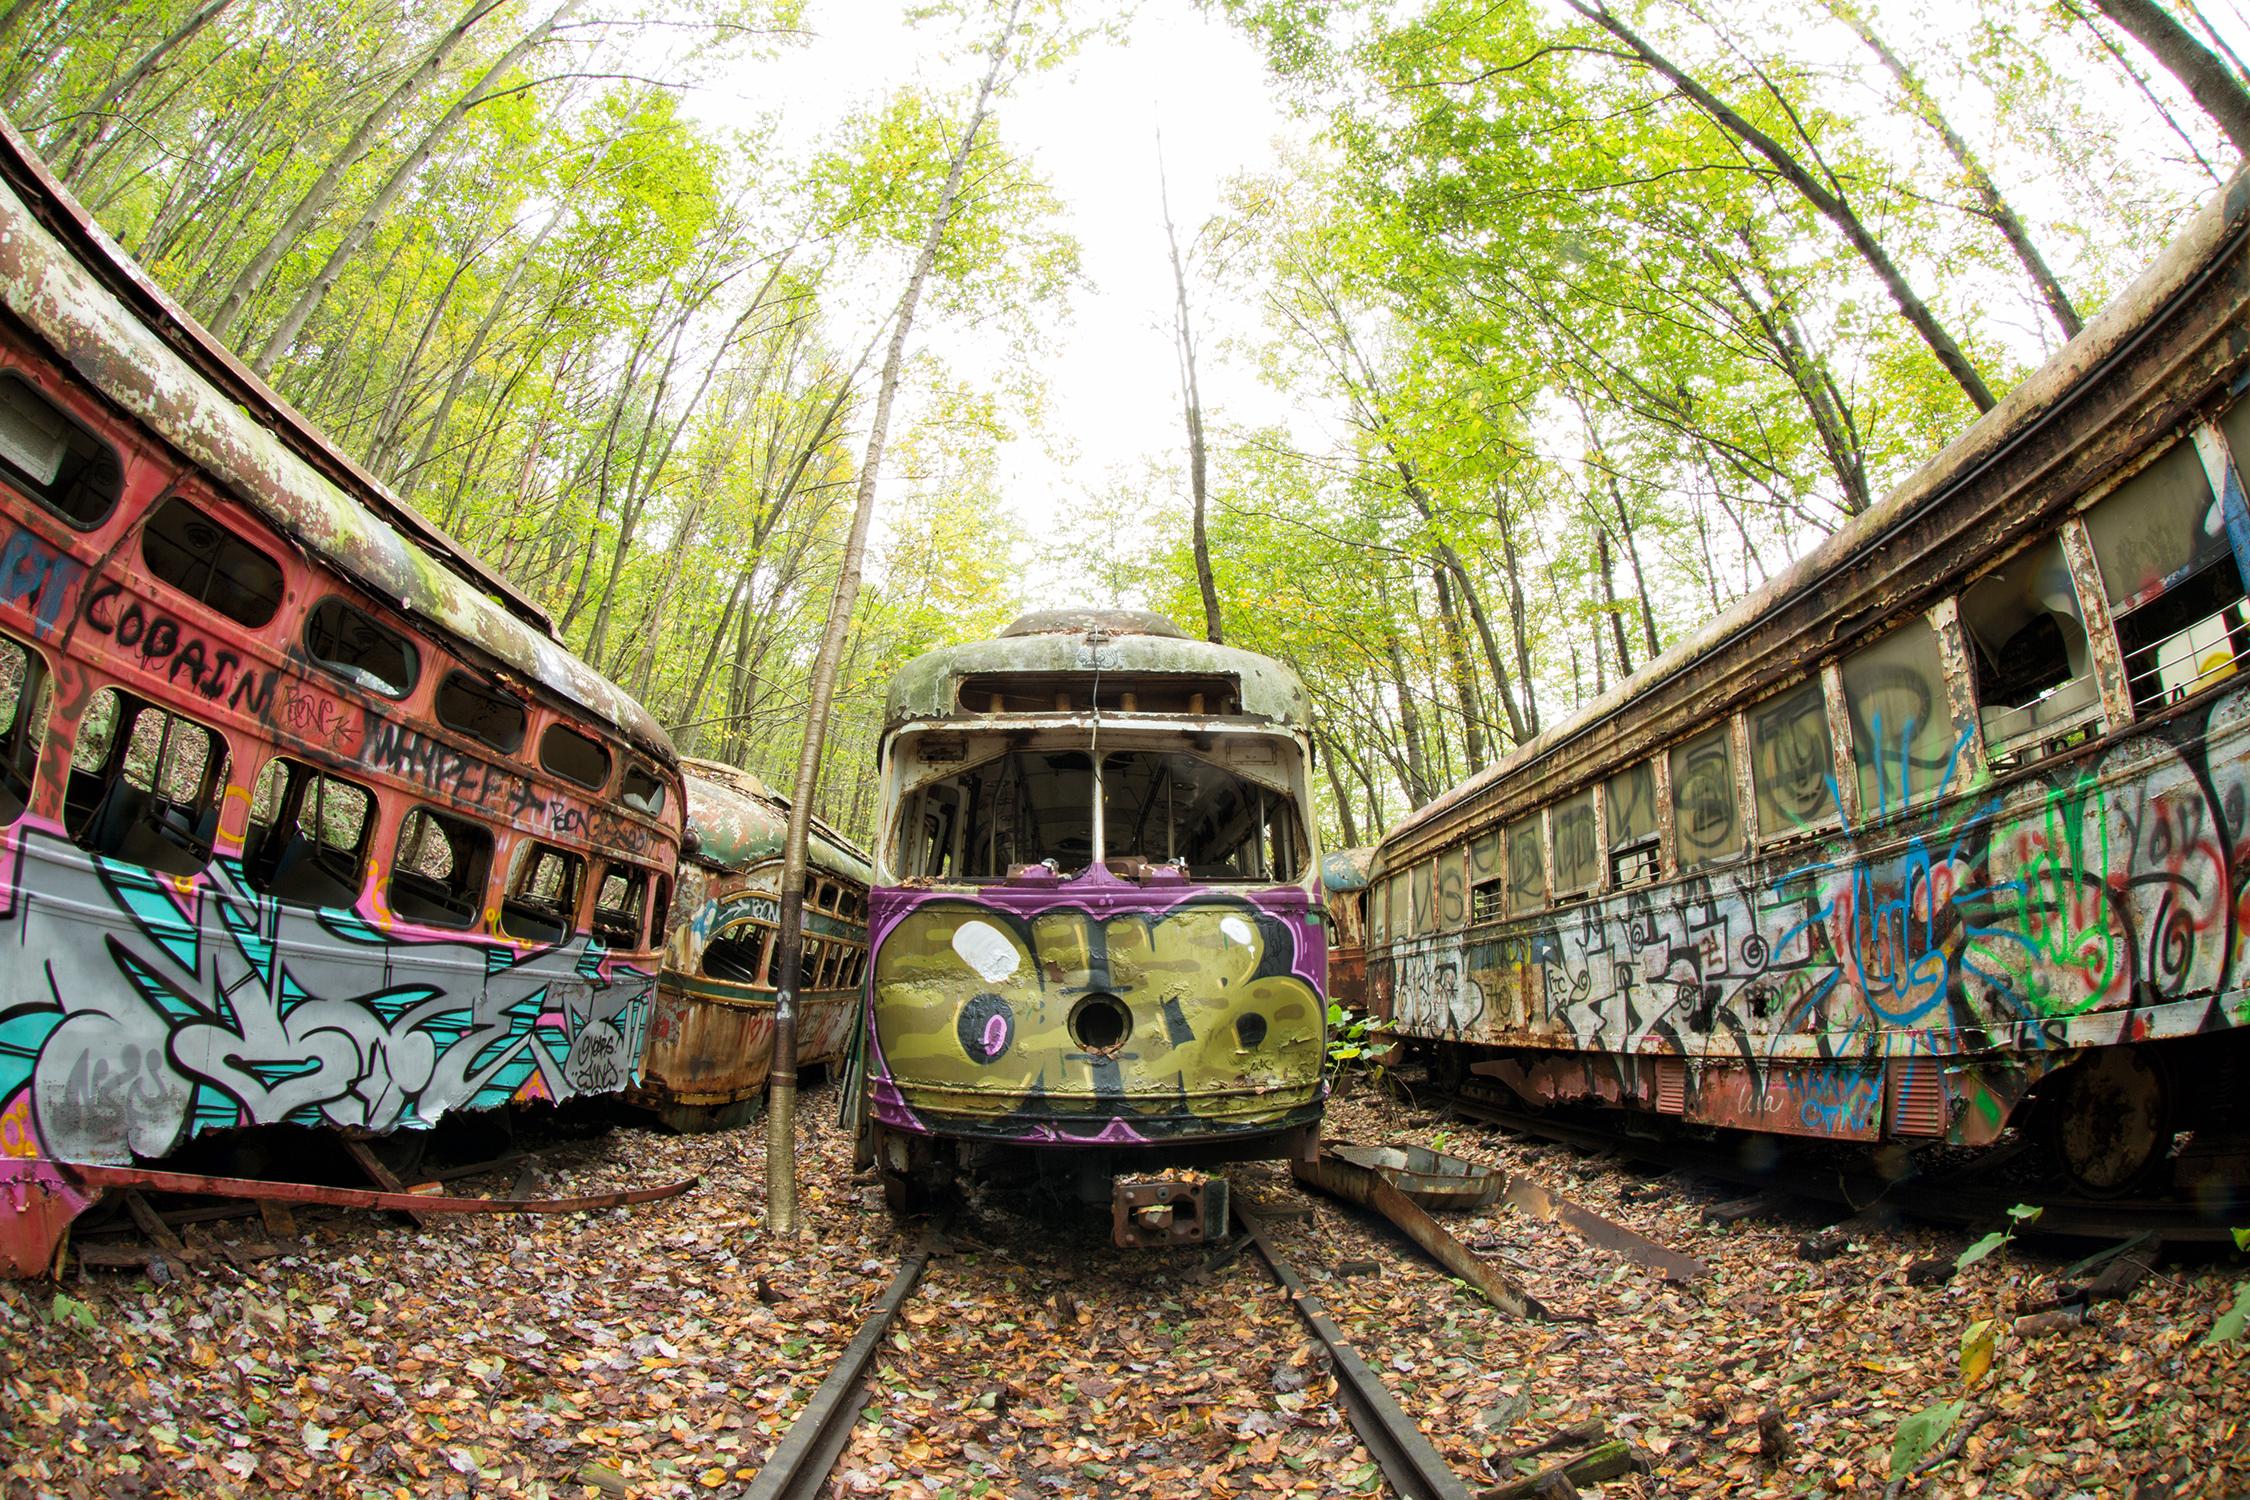 "Graffiti Yard", contemporain, trolley, paysage, rouillé, train, photographie.